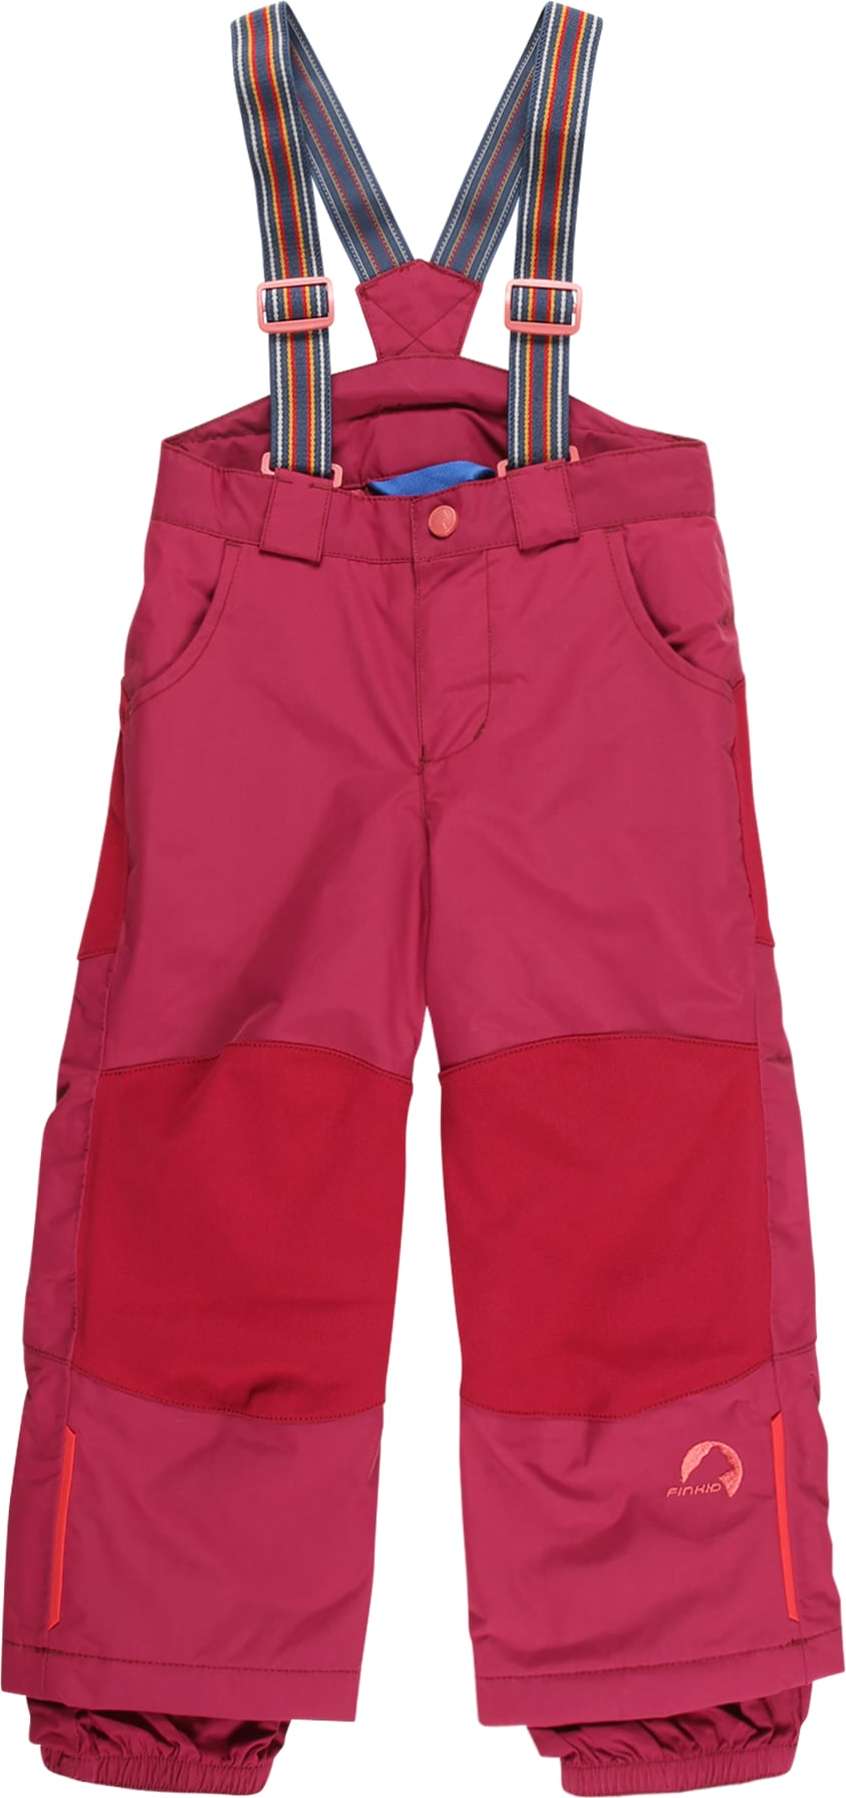 FINKID Funkční kalhoty 'RUUVI' červená / červená třešeň